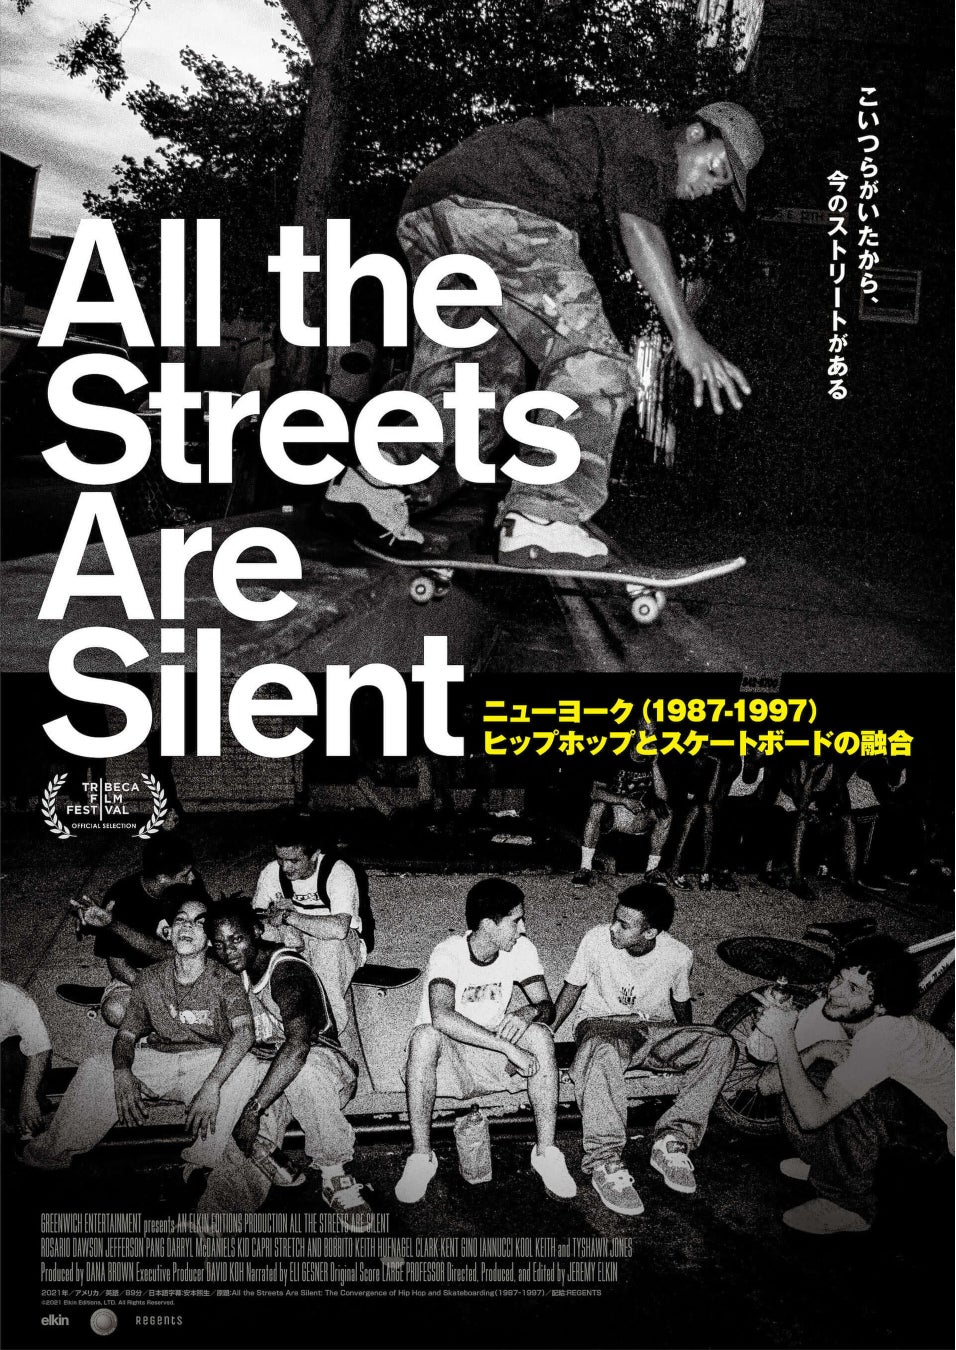 株式会社ビーズインターナショナル宣伝の映画『All the Streets Are Silent』が10/ 21（金）より公開